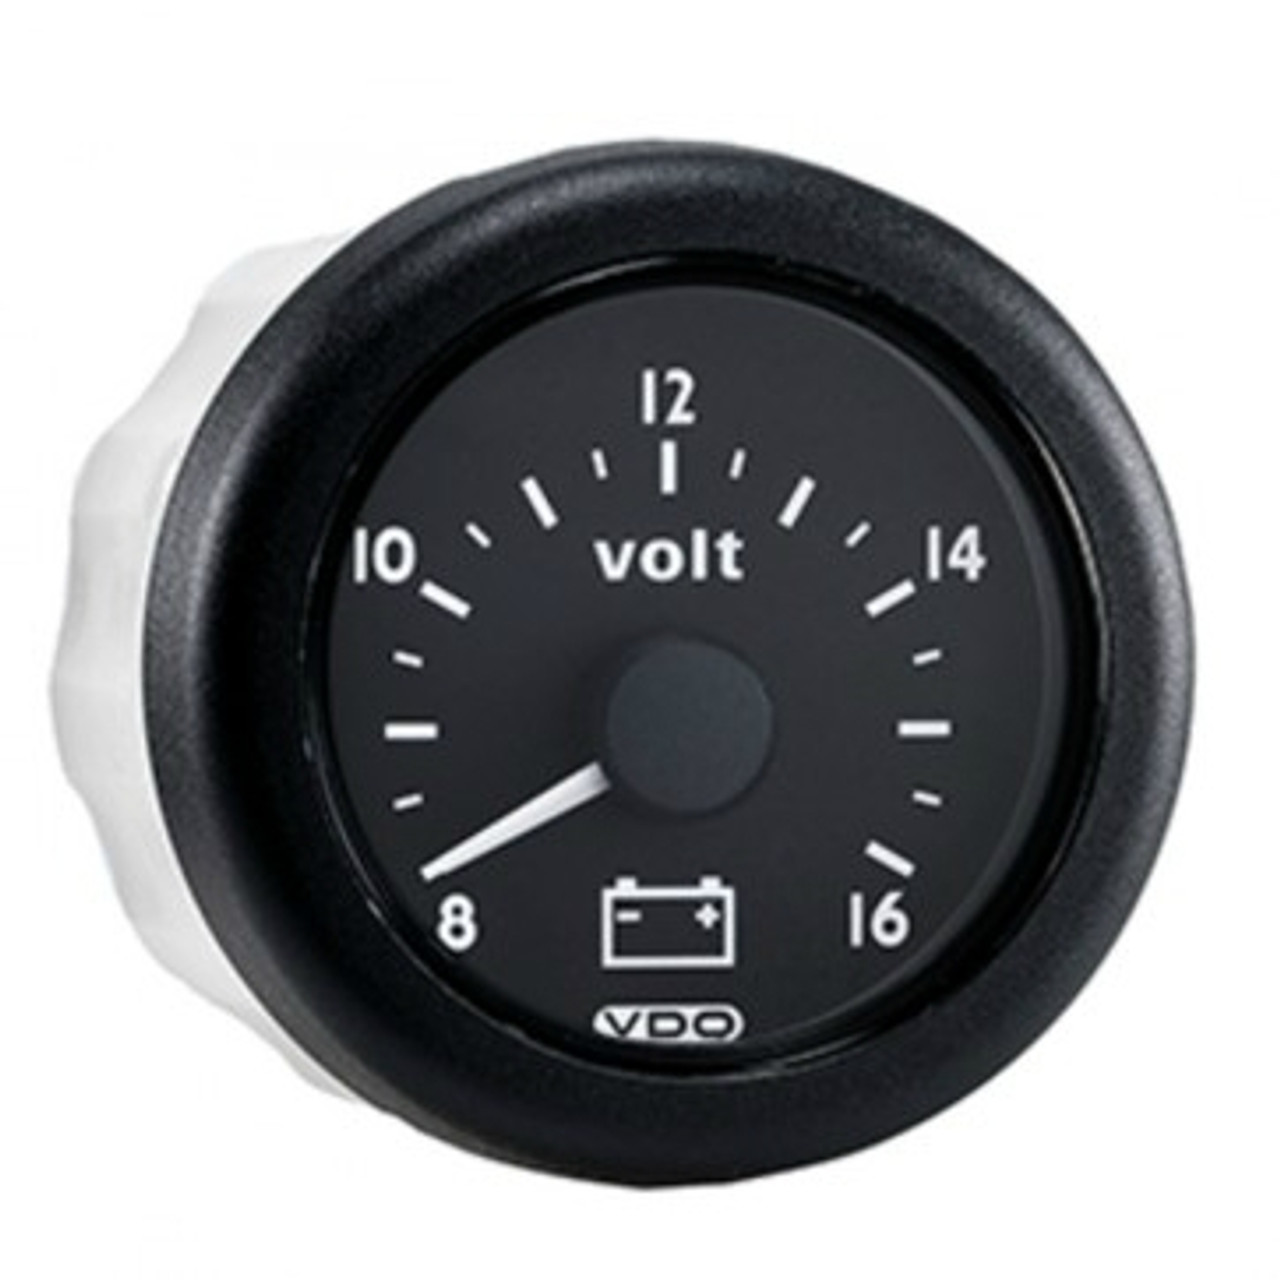 VDO Voltmeter N02-413-066-S